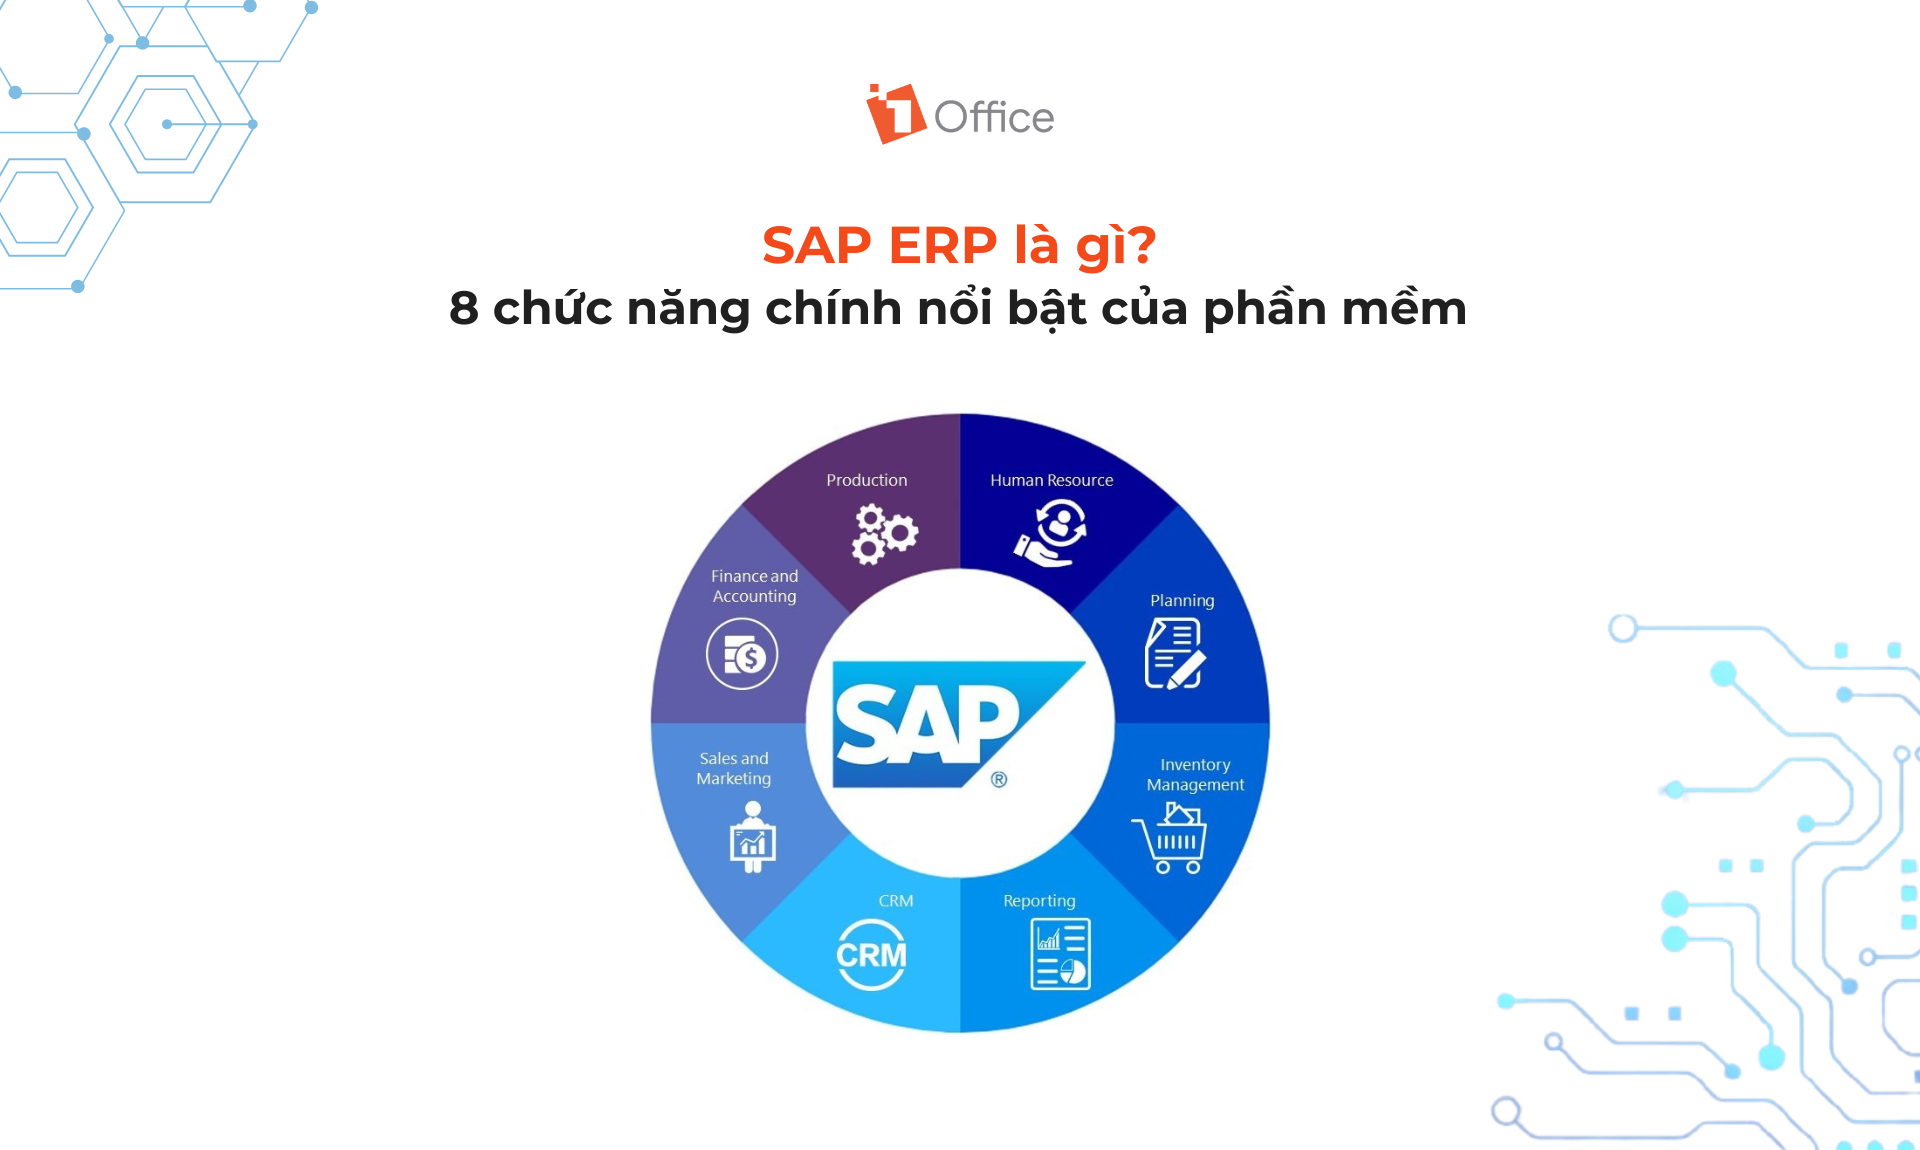 SAP ERP là gì? 8 chức năng chính nổi bật của phần mềm